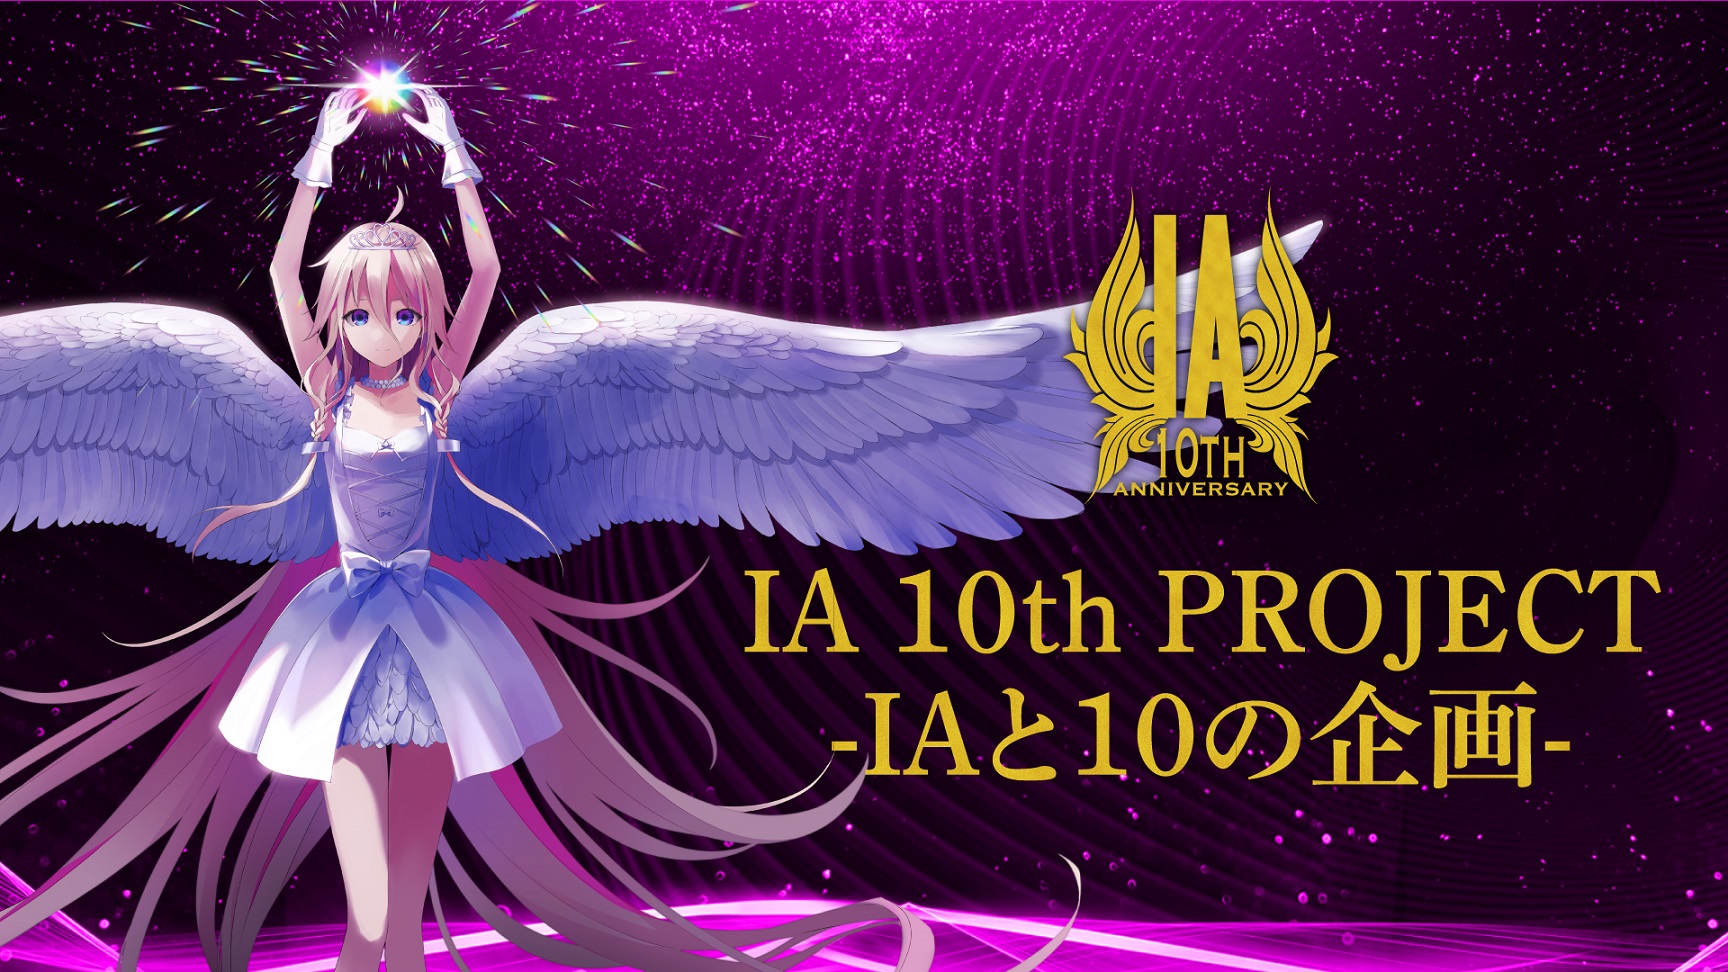 【10周年関連INFO】「IA」10周年プロジェクト始動。 特設サイトにてメインコンテンツ「IAと10の企画」の全貌が続々公開。